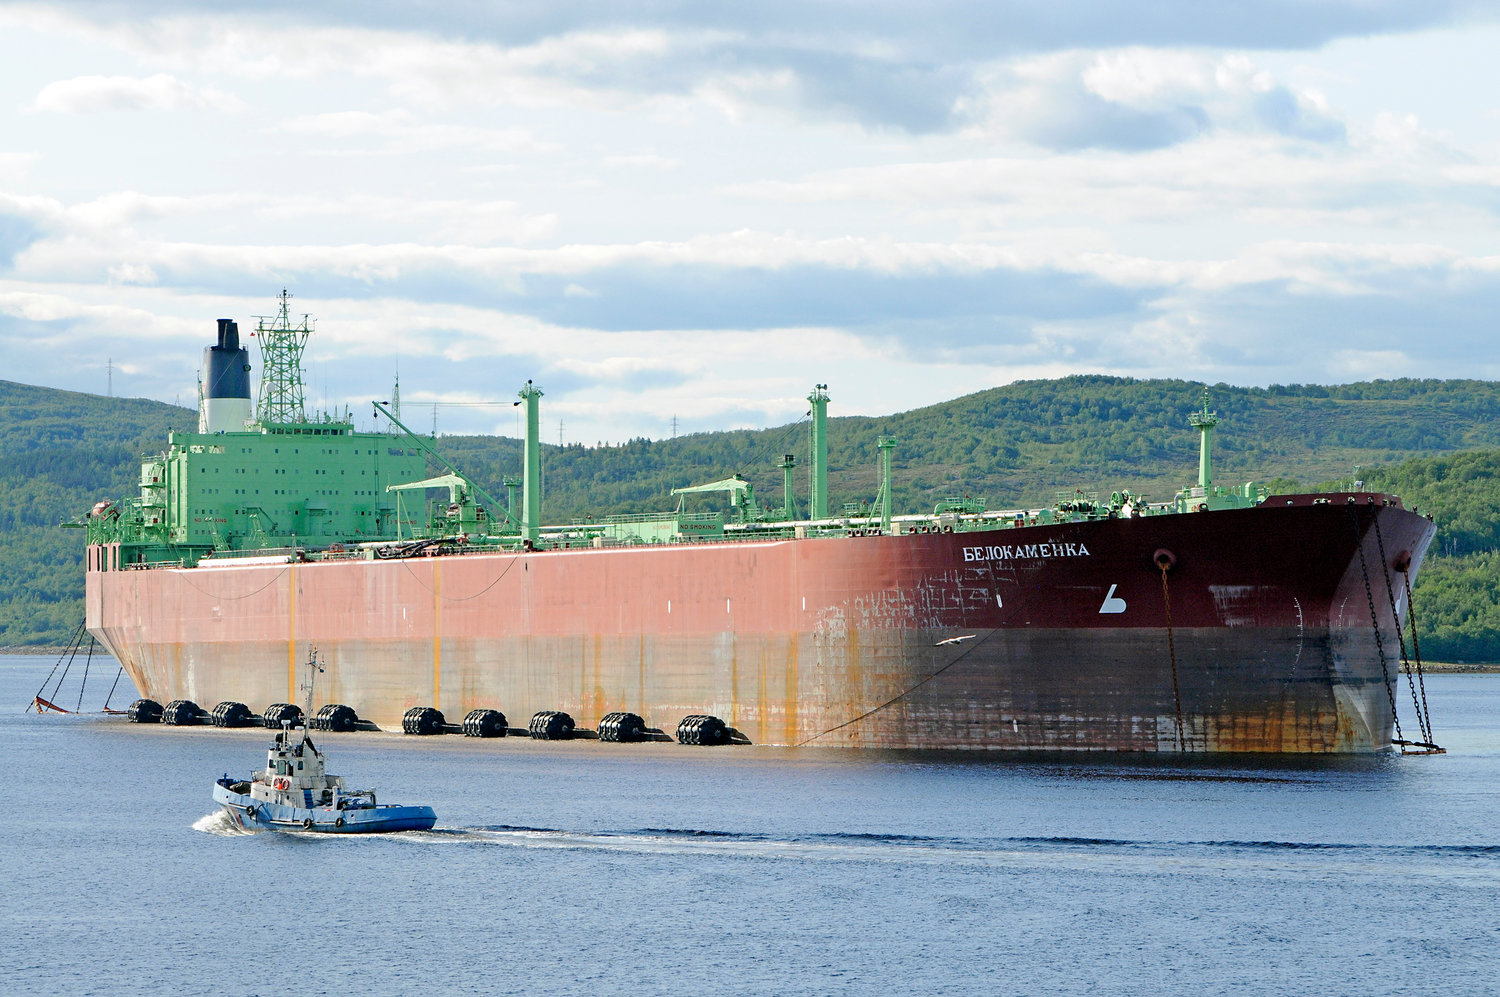 Oil tanker in the port of Murmansk, Russia.